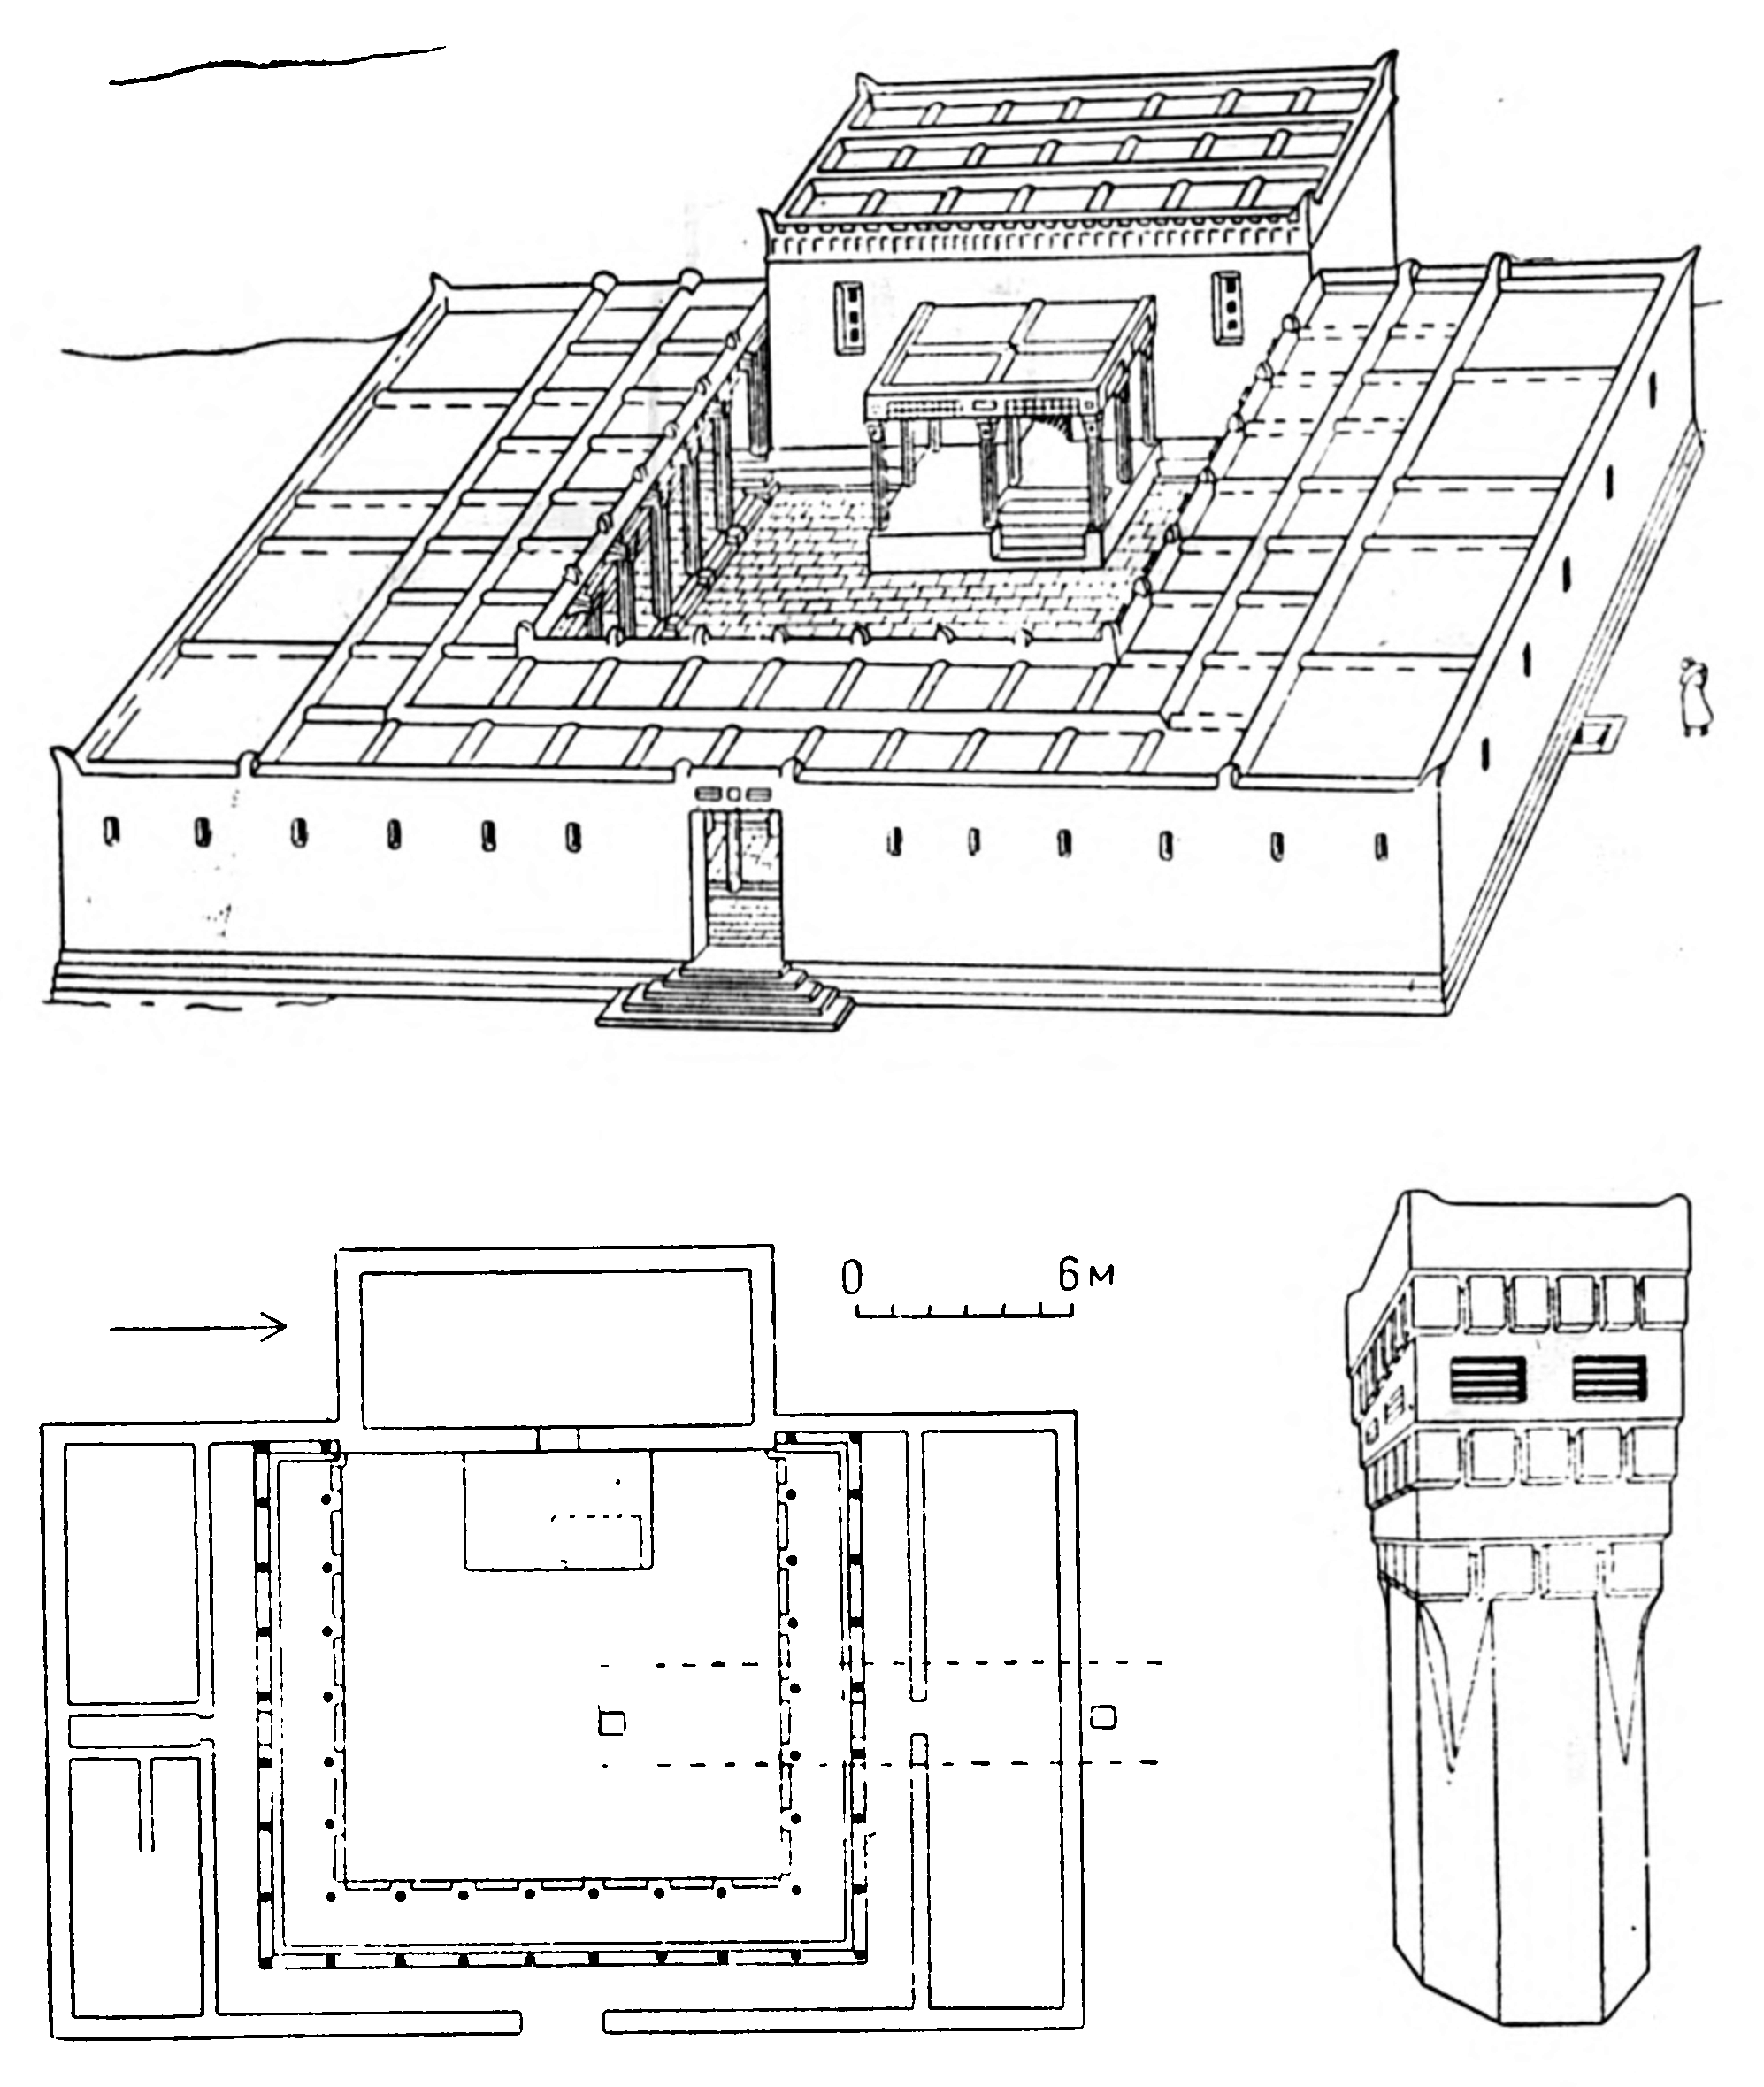 2. Хукка. Храм. Общий вид (реконструкция); план, капитель колонны